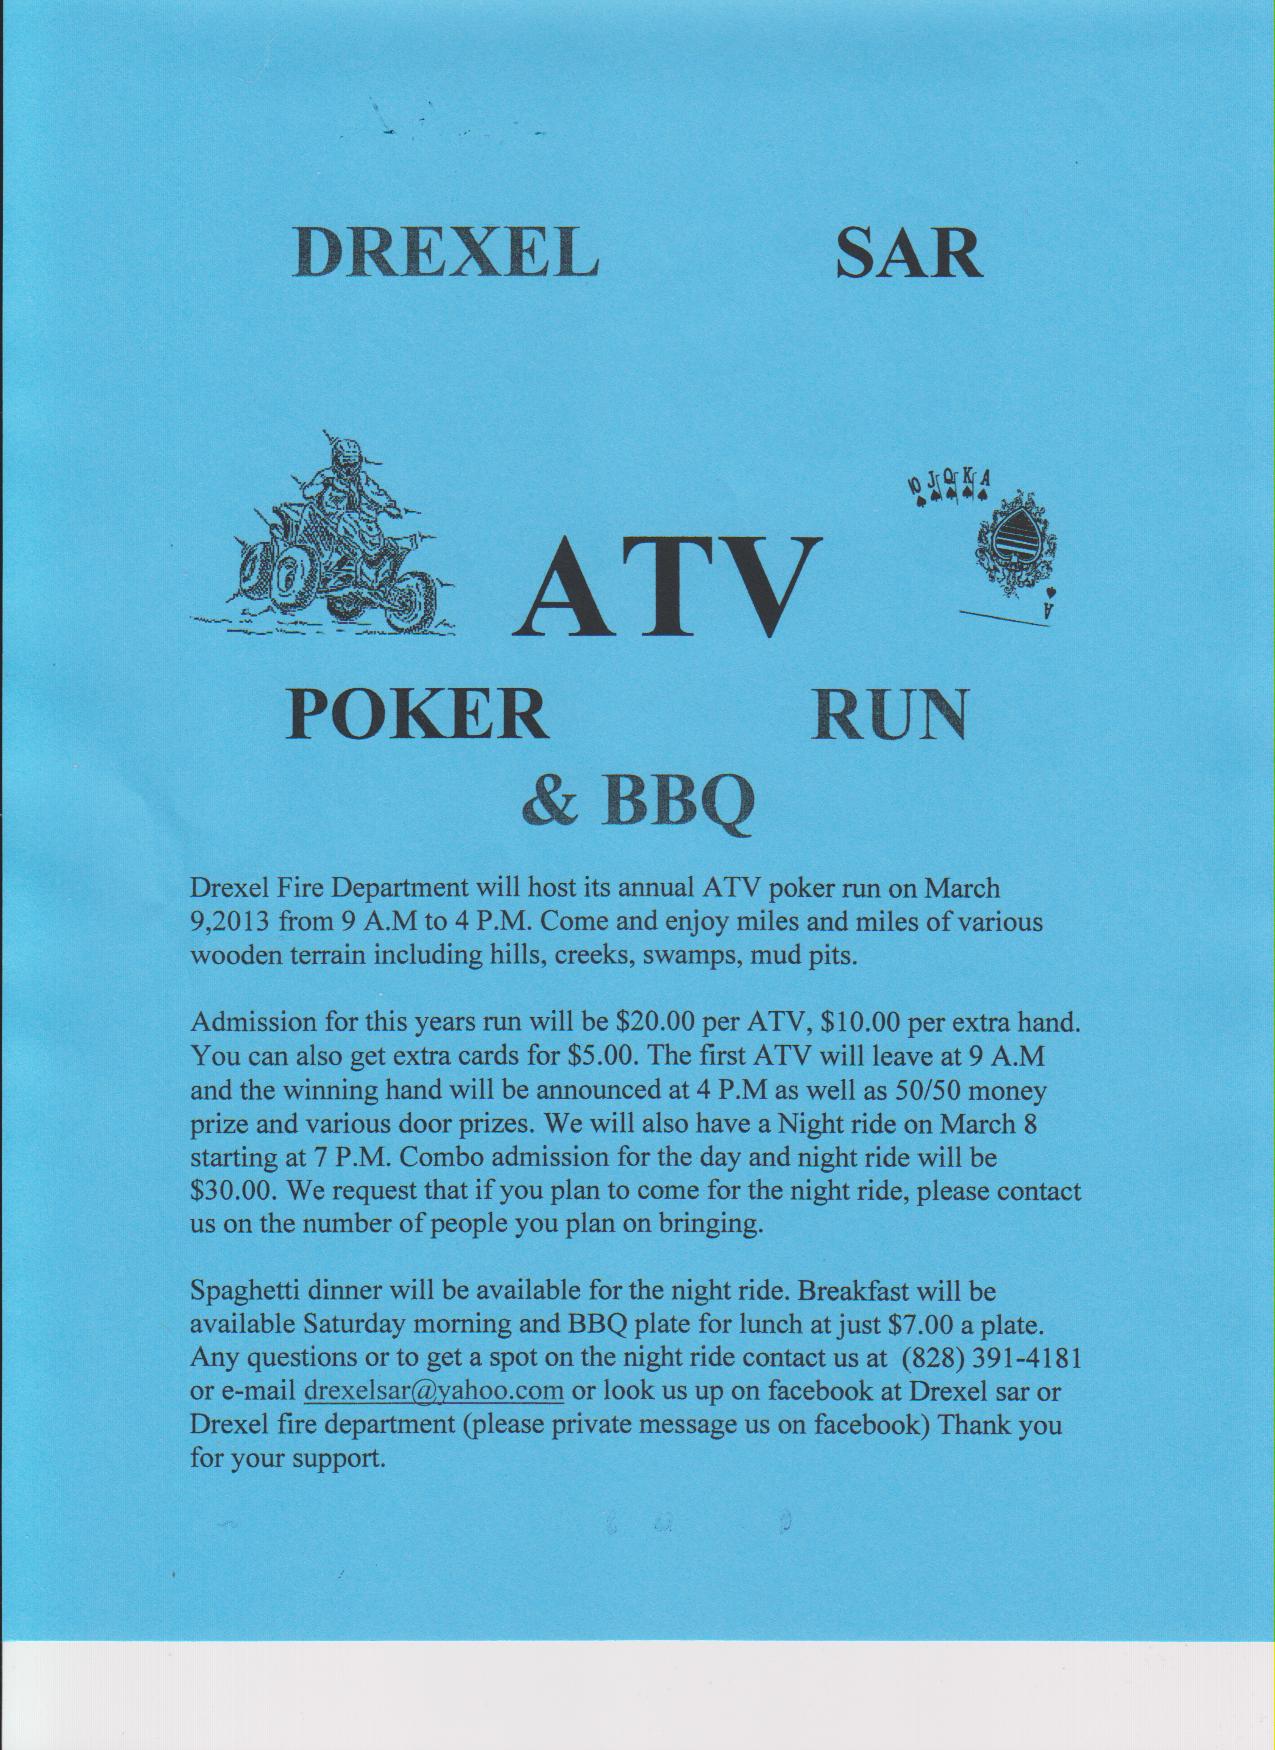 Drexel ATV and Poker Run Flyer